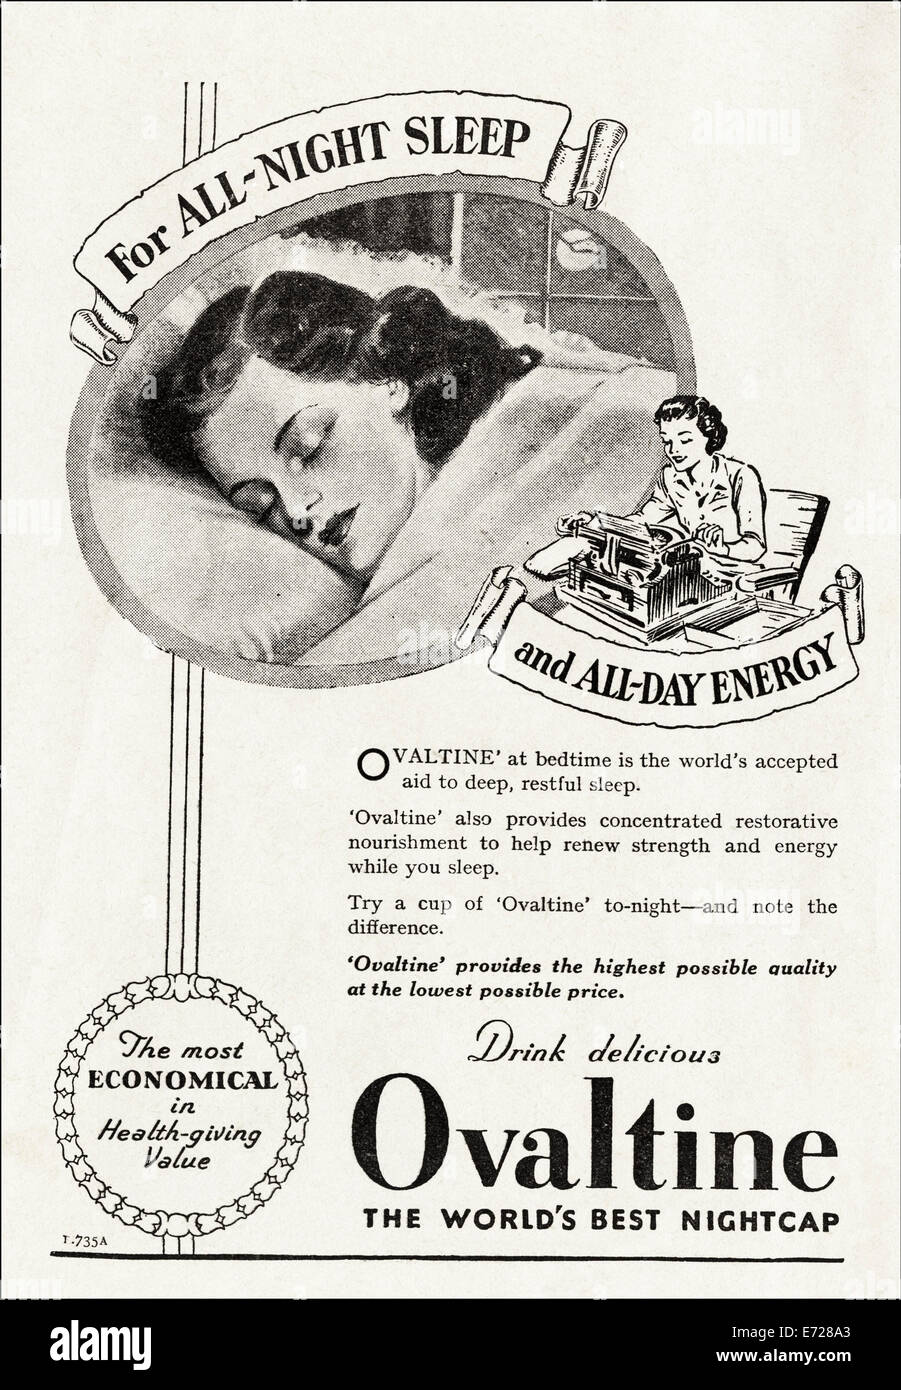 1940 pubblicità per OVALTINE nella rivista inglese datato novembre 1949 Foto Stock